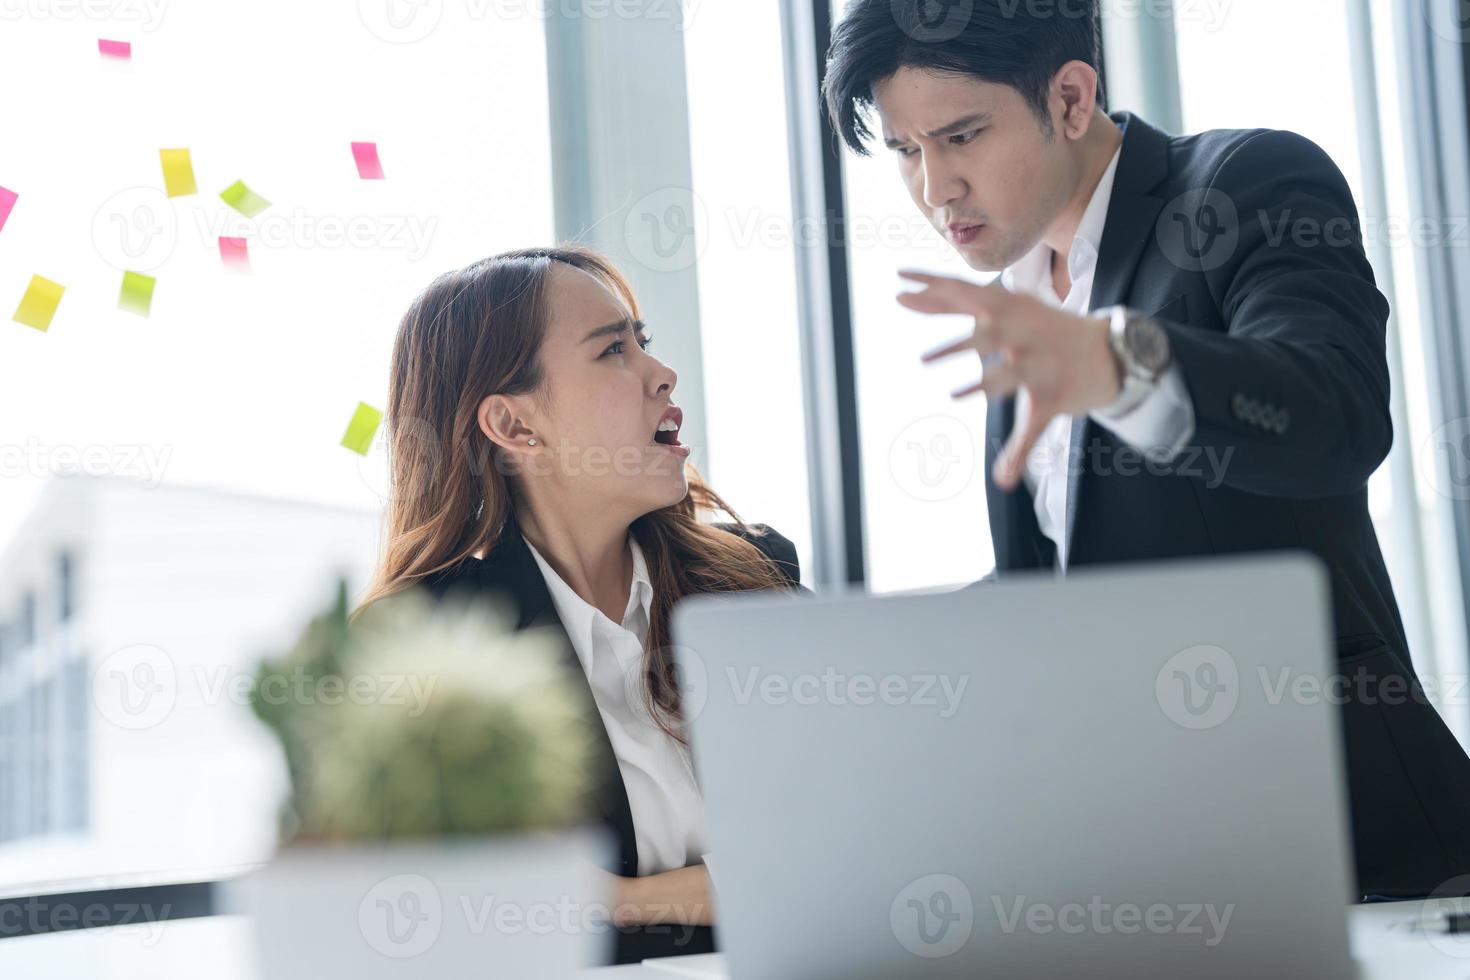 företag människor Sammanträde tillsammans på en skrivbord använder sig av bärbara datorer i de kontor de två av dem hade en allvarlig, orolig uttryck på deras ansikten medan arbetssätt tillsammans foto